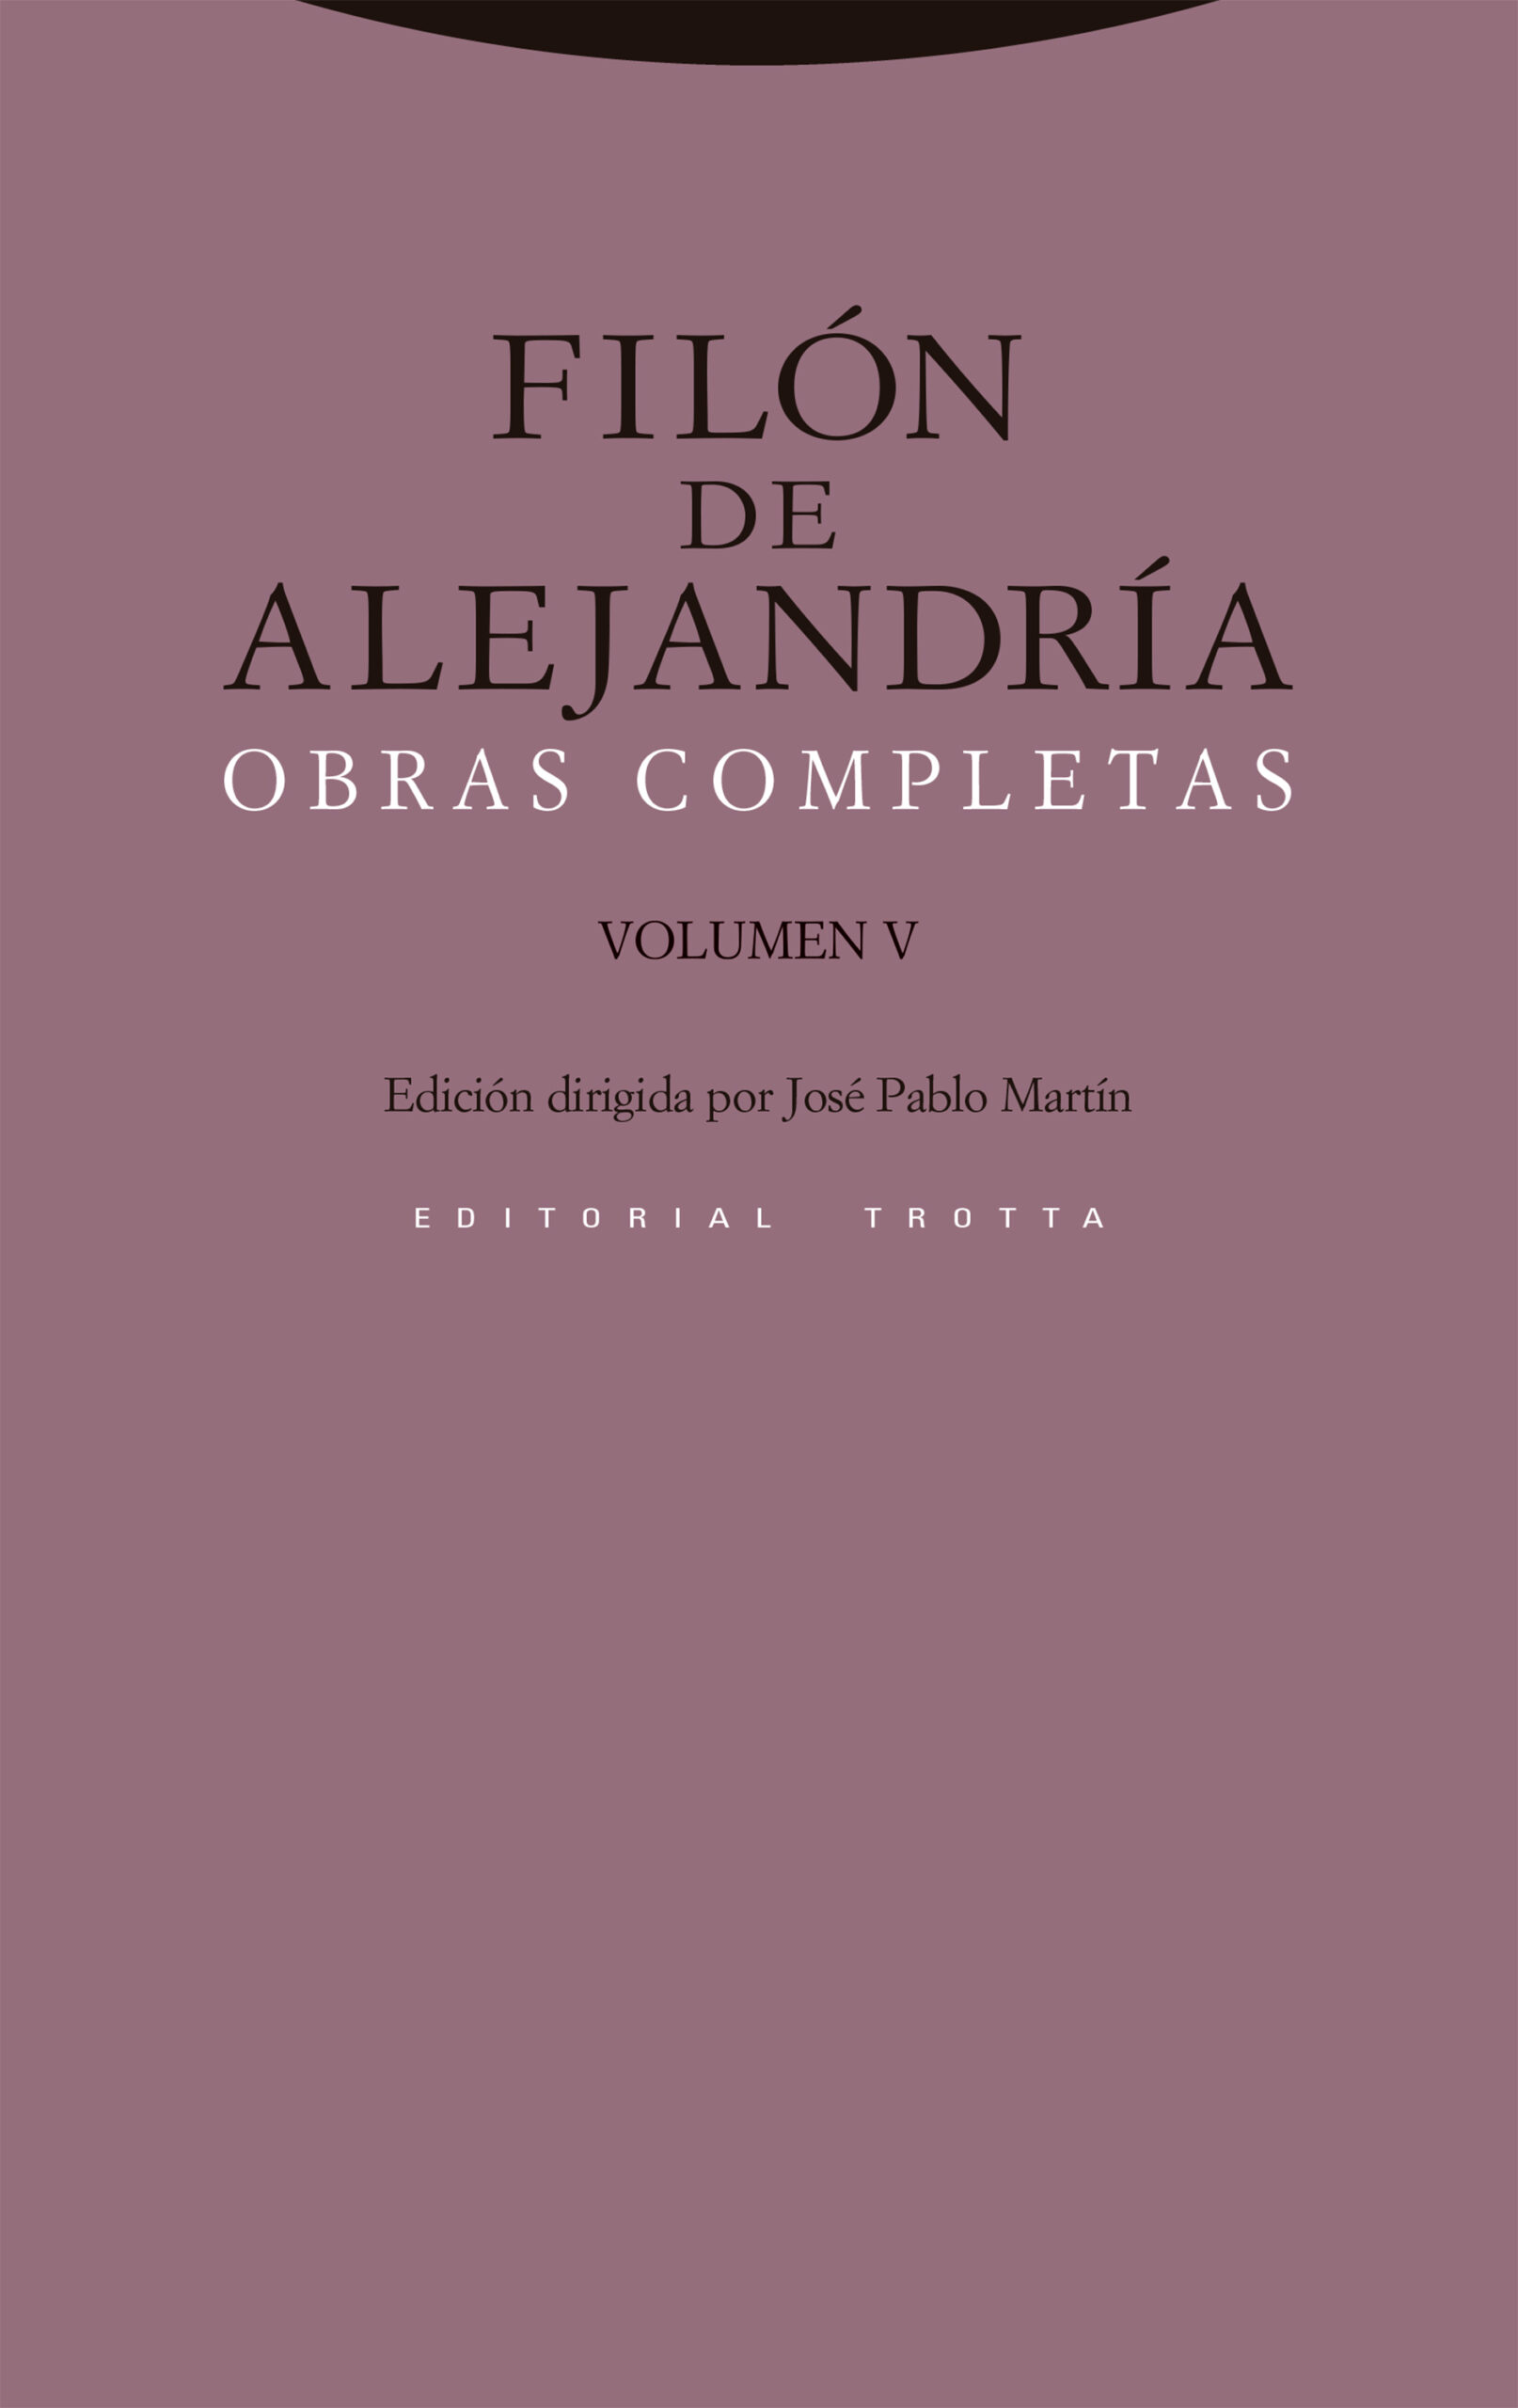 Obras Completas Vol. V. Filón de Alejandría